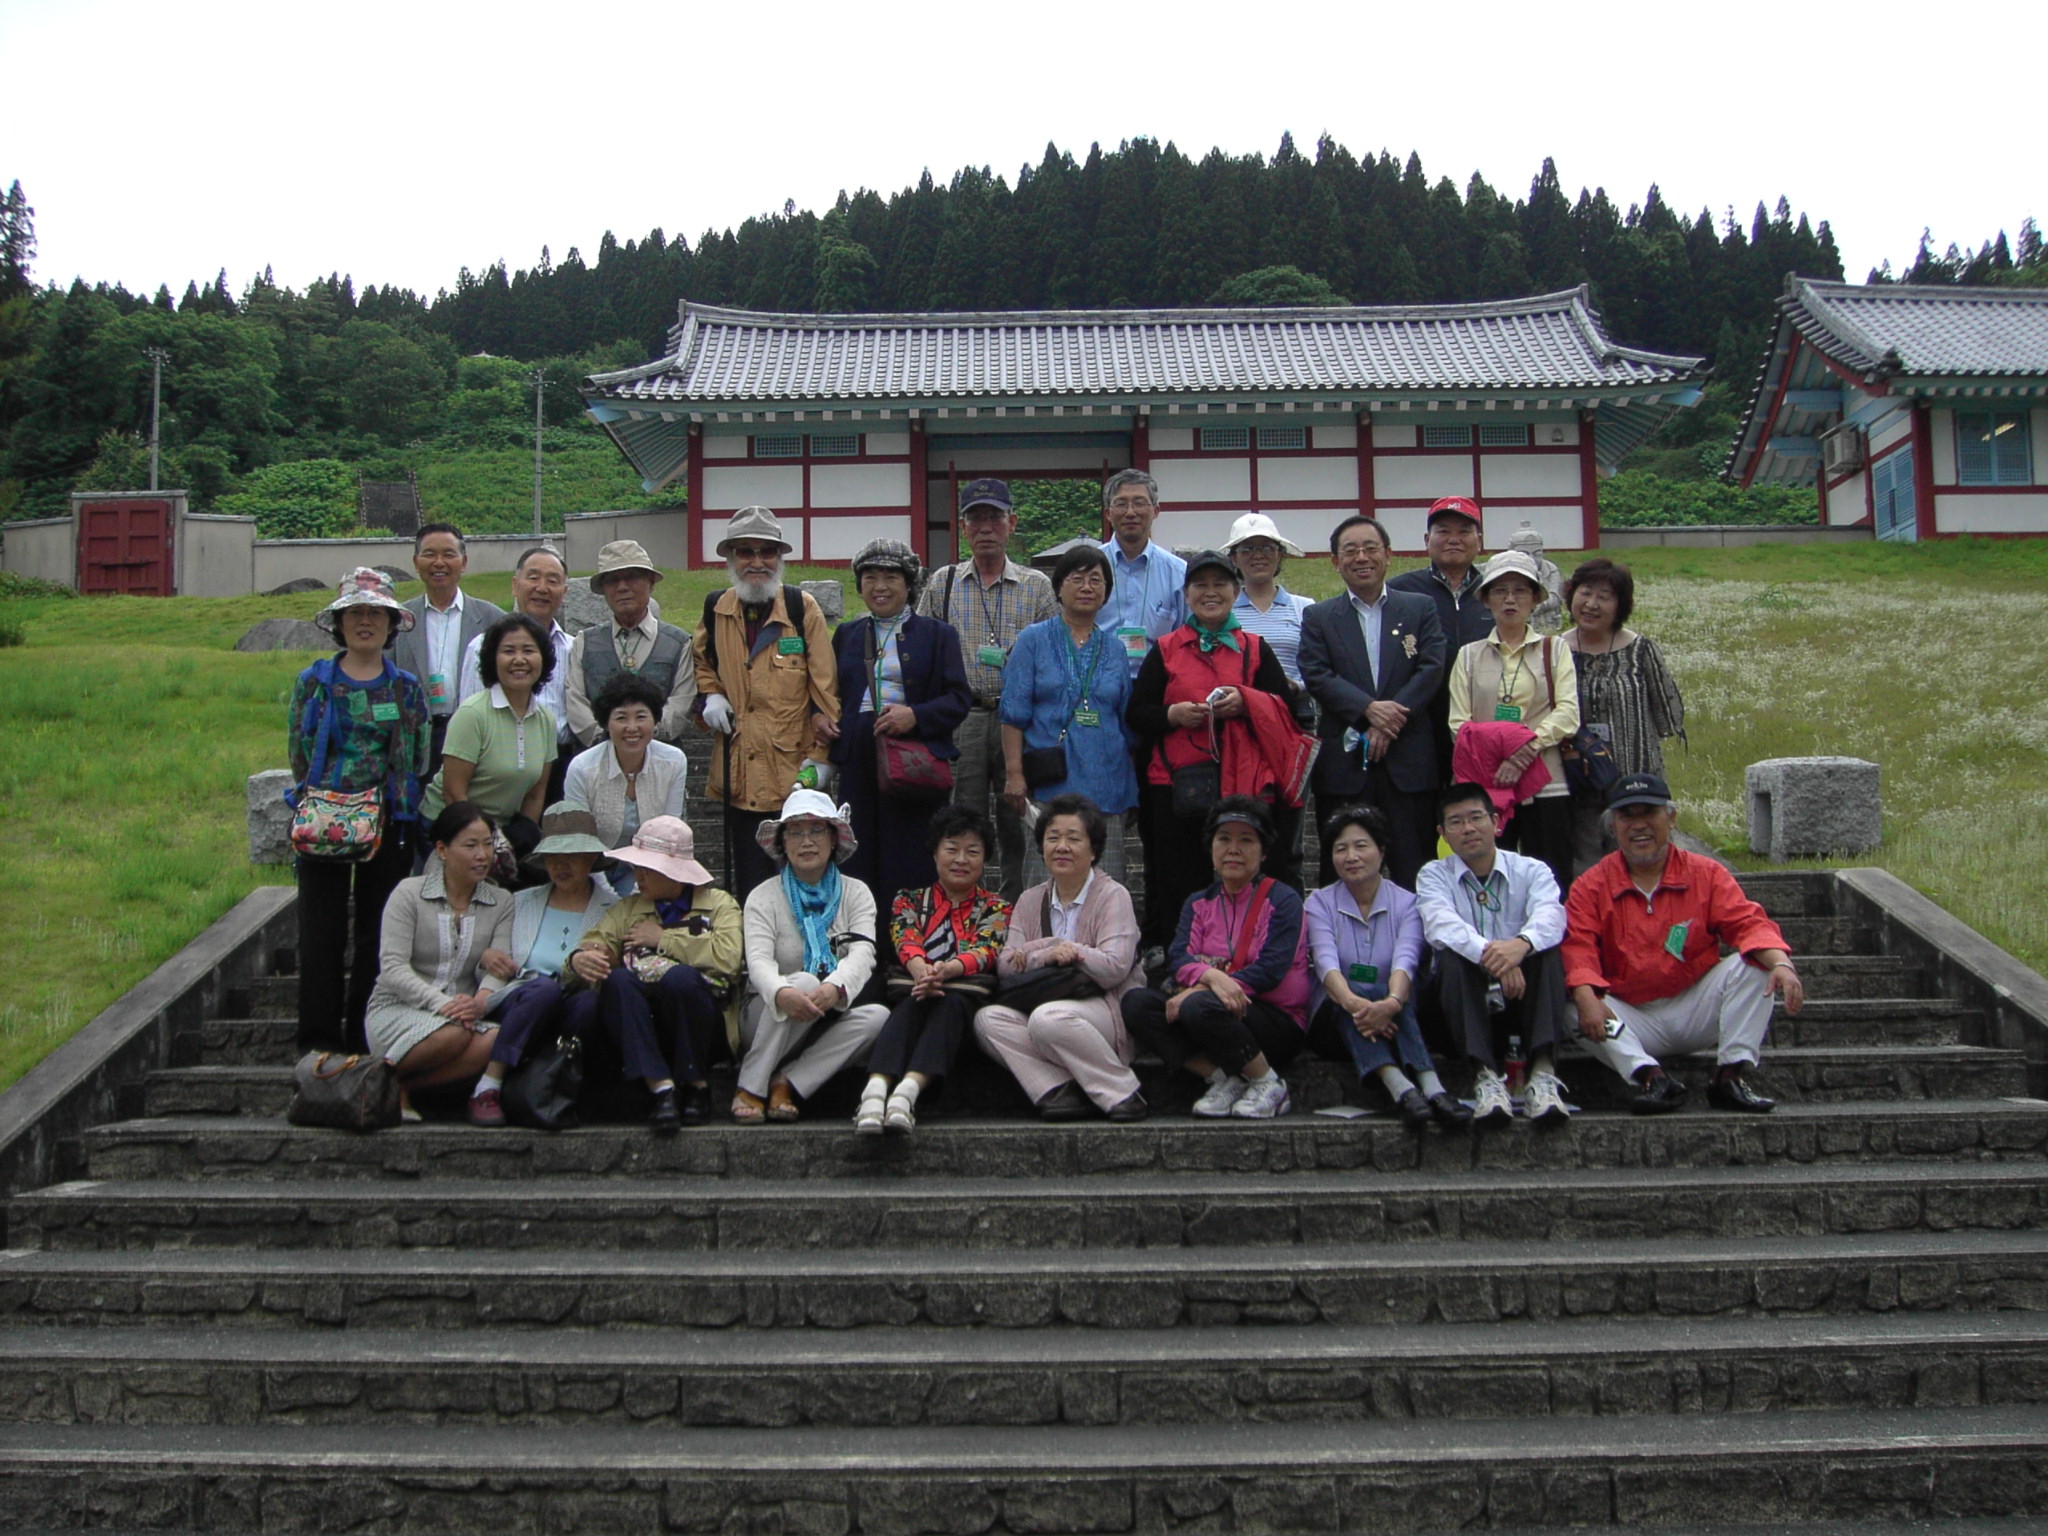 도자와 무라에 시집온 한국인 주부들이 고려촌에서 기념사진을 찍고 있다. 둘째줄 맨 왼쪽이 한국인 간사인 이승호씨.